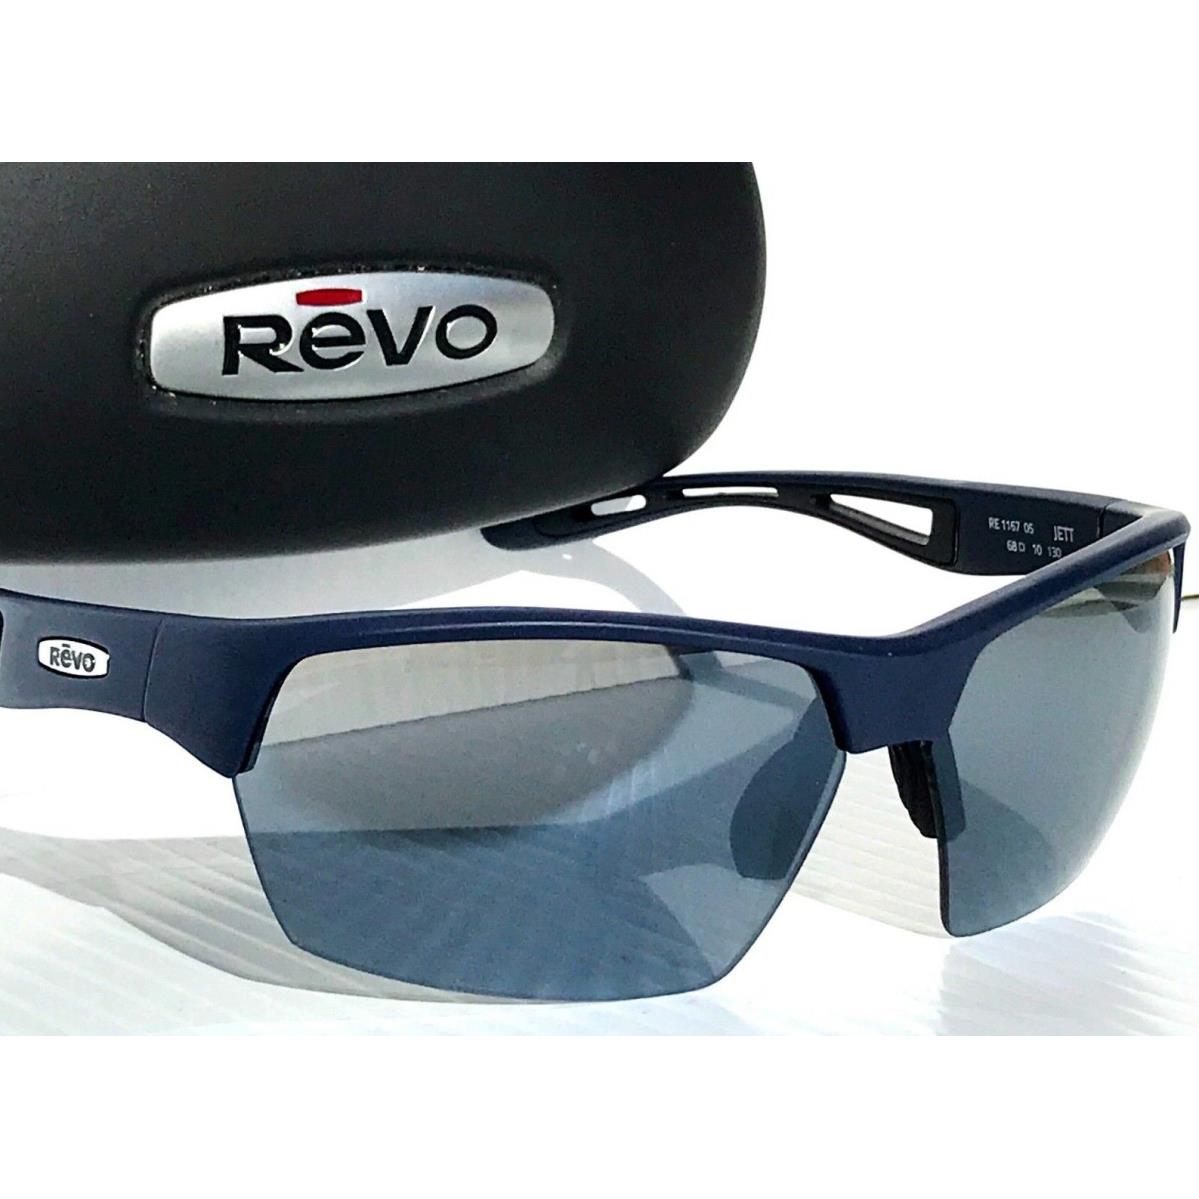 Revo sunglasses JETT - Navy Frame, Gray Lens 1